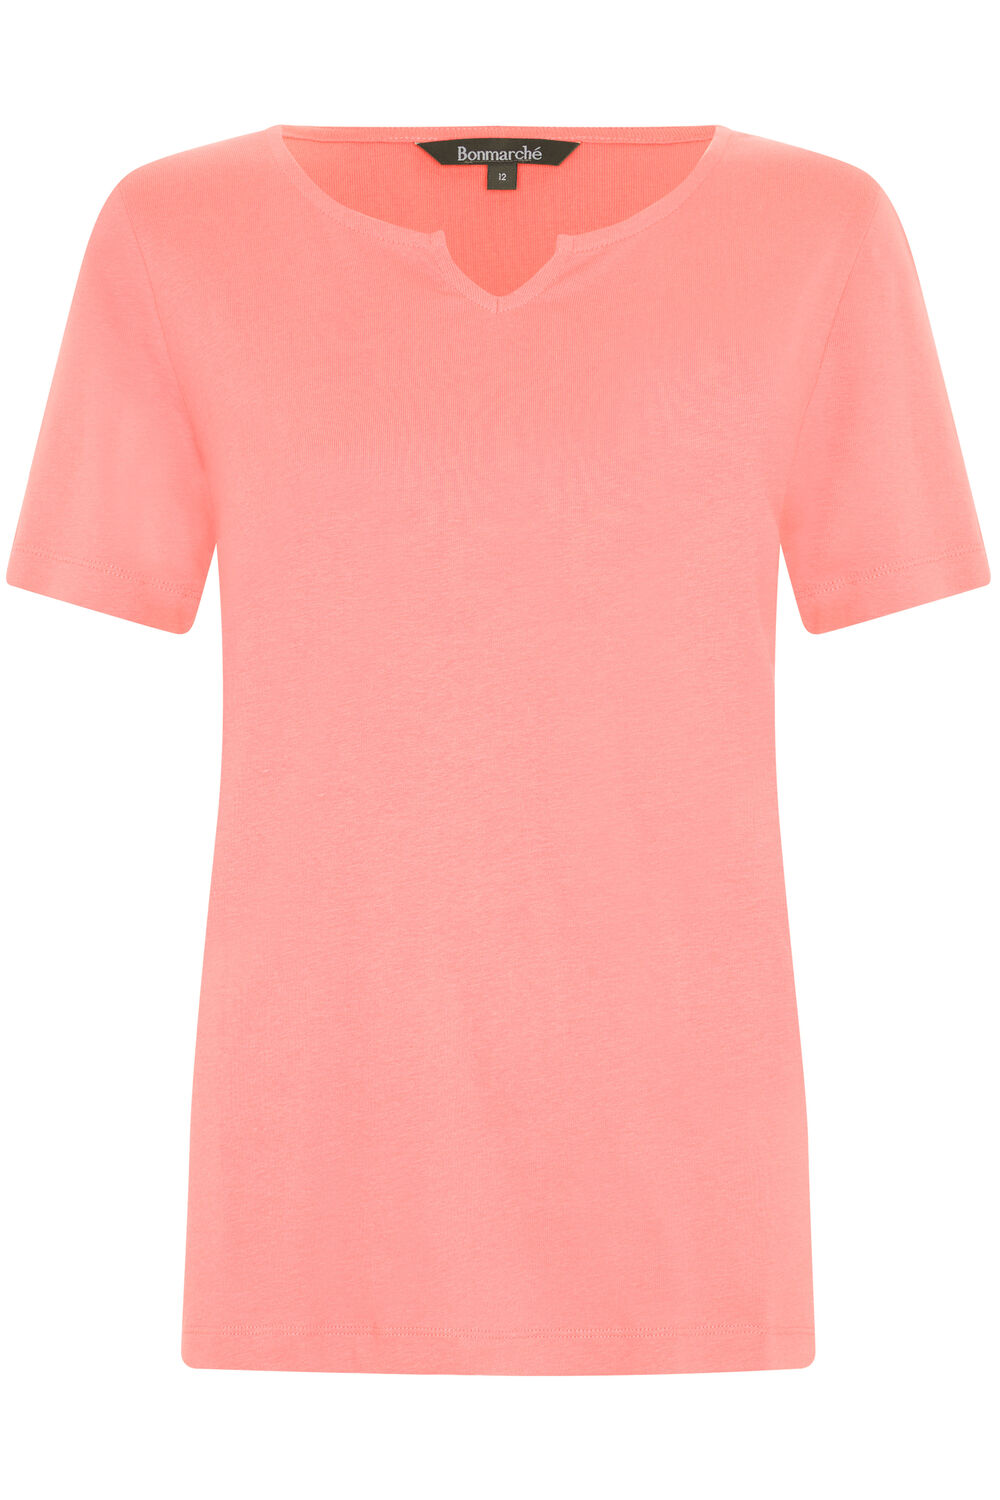 Bonmarche Coral Short Sleeve Plain Notch Neck T-Shirt, Size: 14